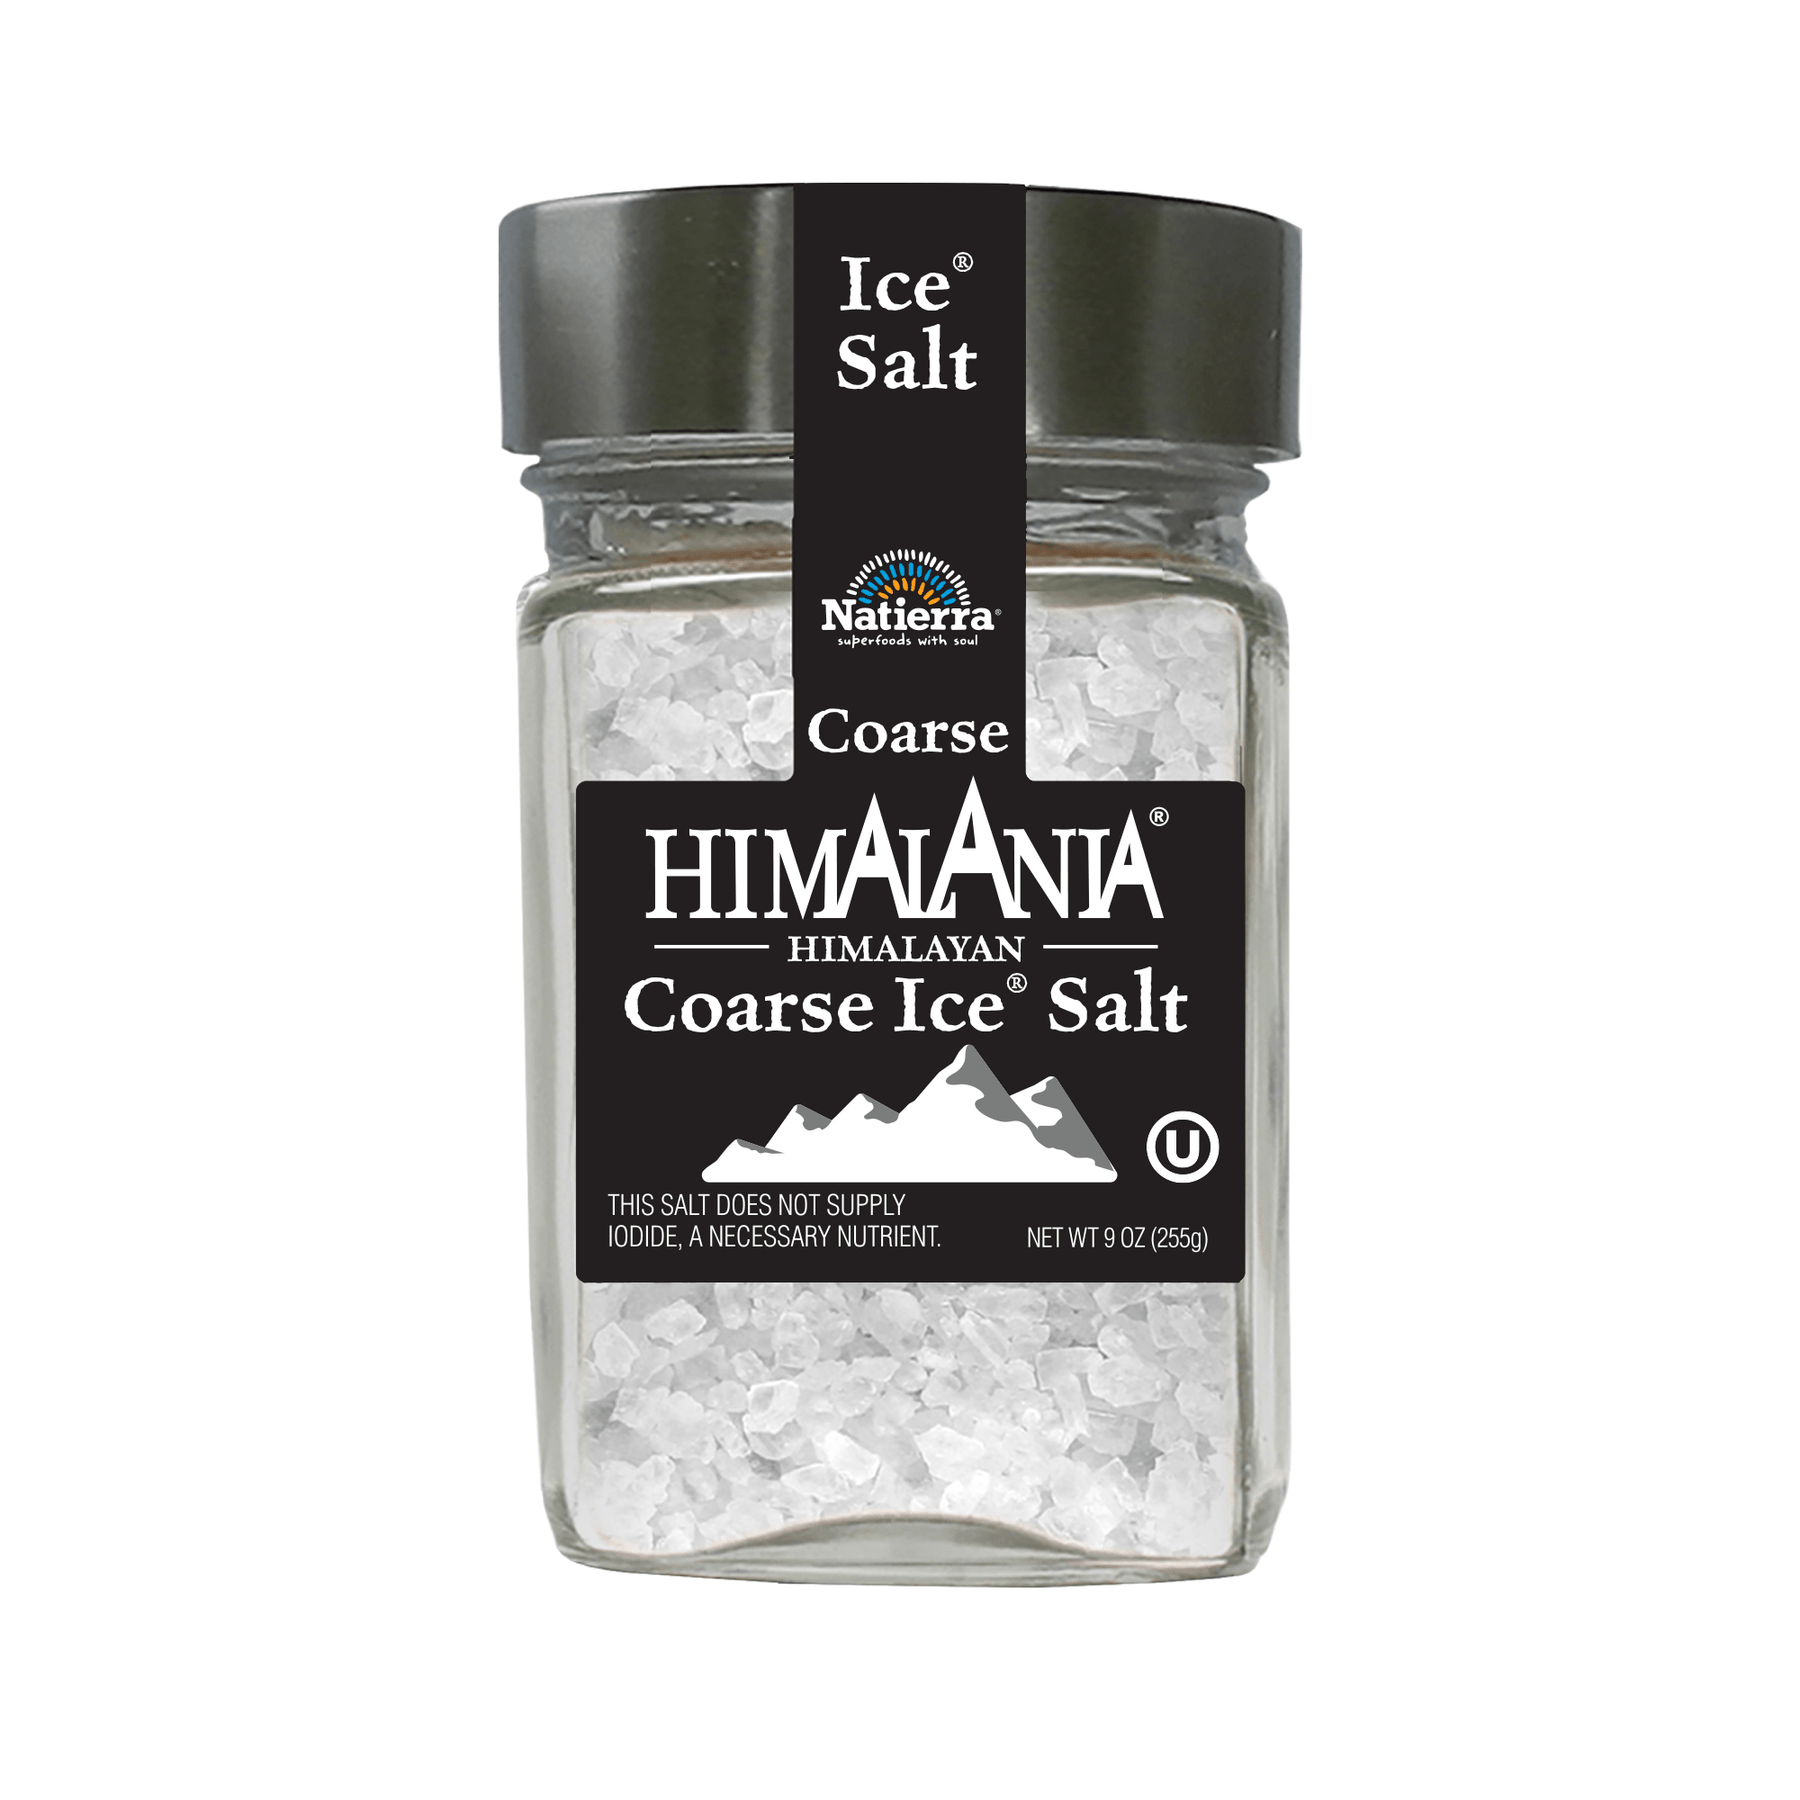 Natierra Himalania Coarse Ice Salt 9 oz jar